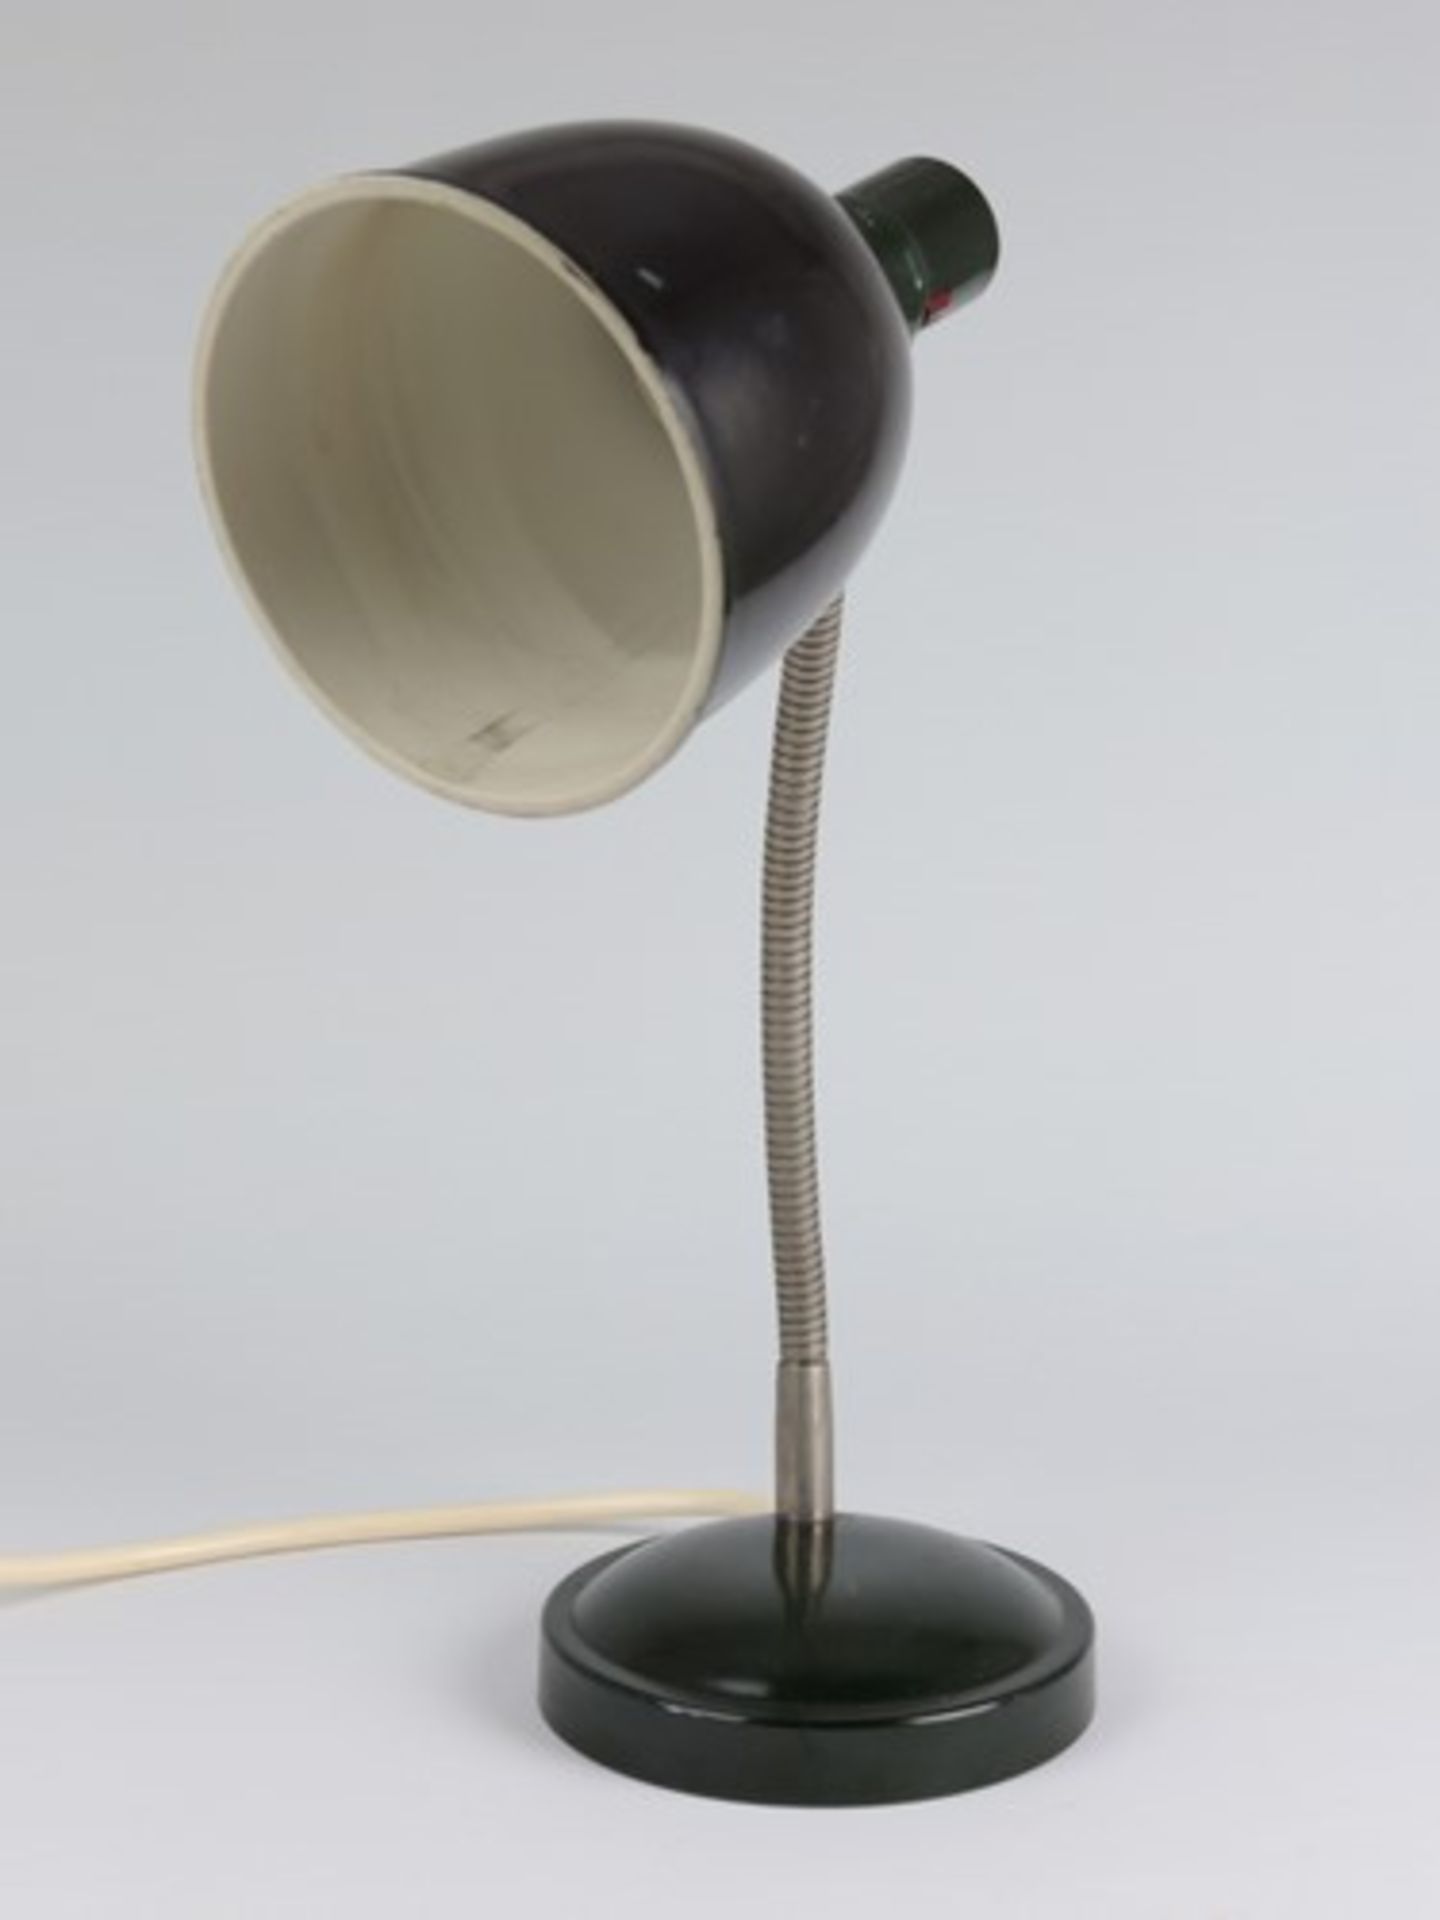 Tischlampeum 1920/30, Metall/Bakelit, dunkelgrün gefasst, einflammig, runder Stand, biegbarer - Image 4 of 5